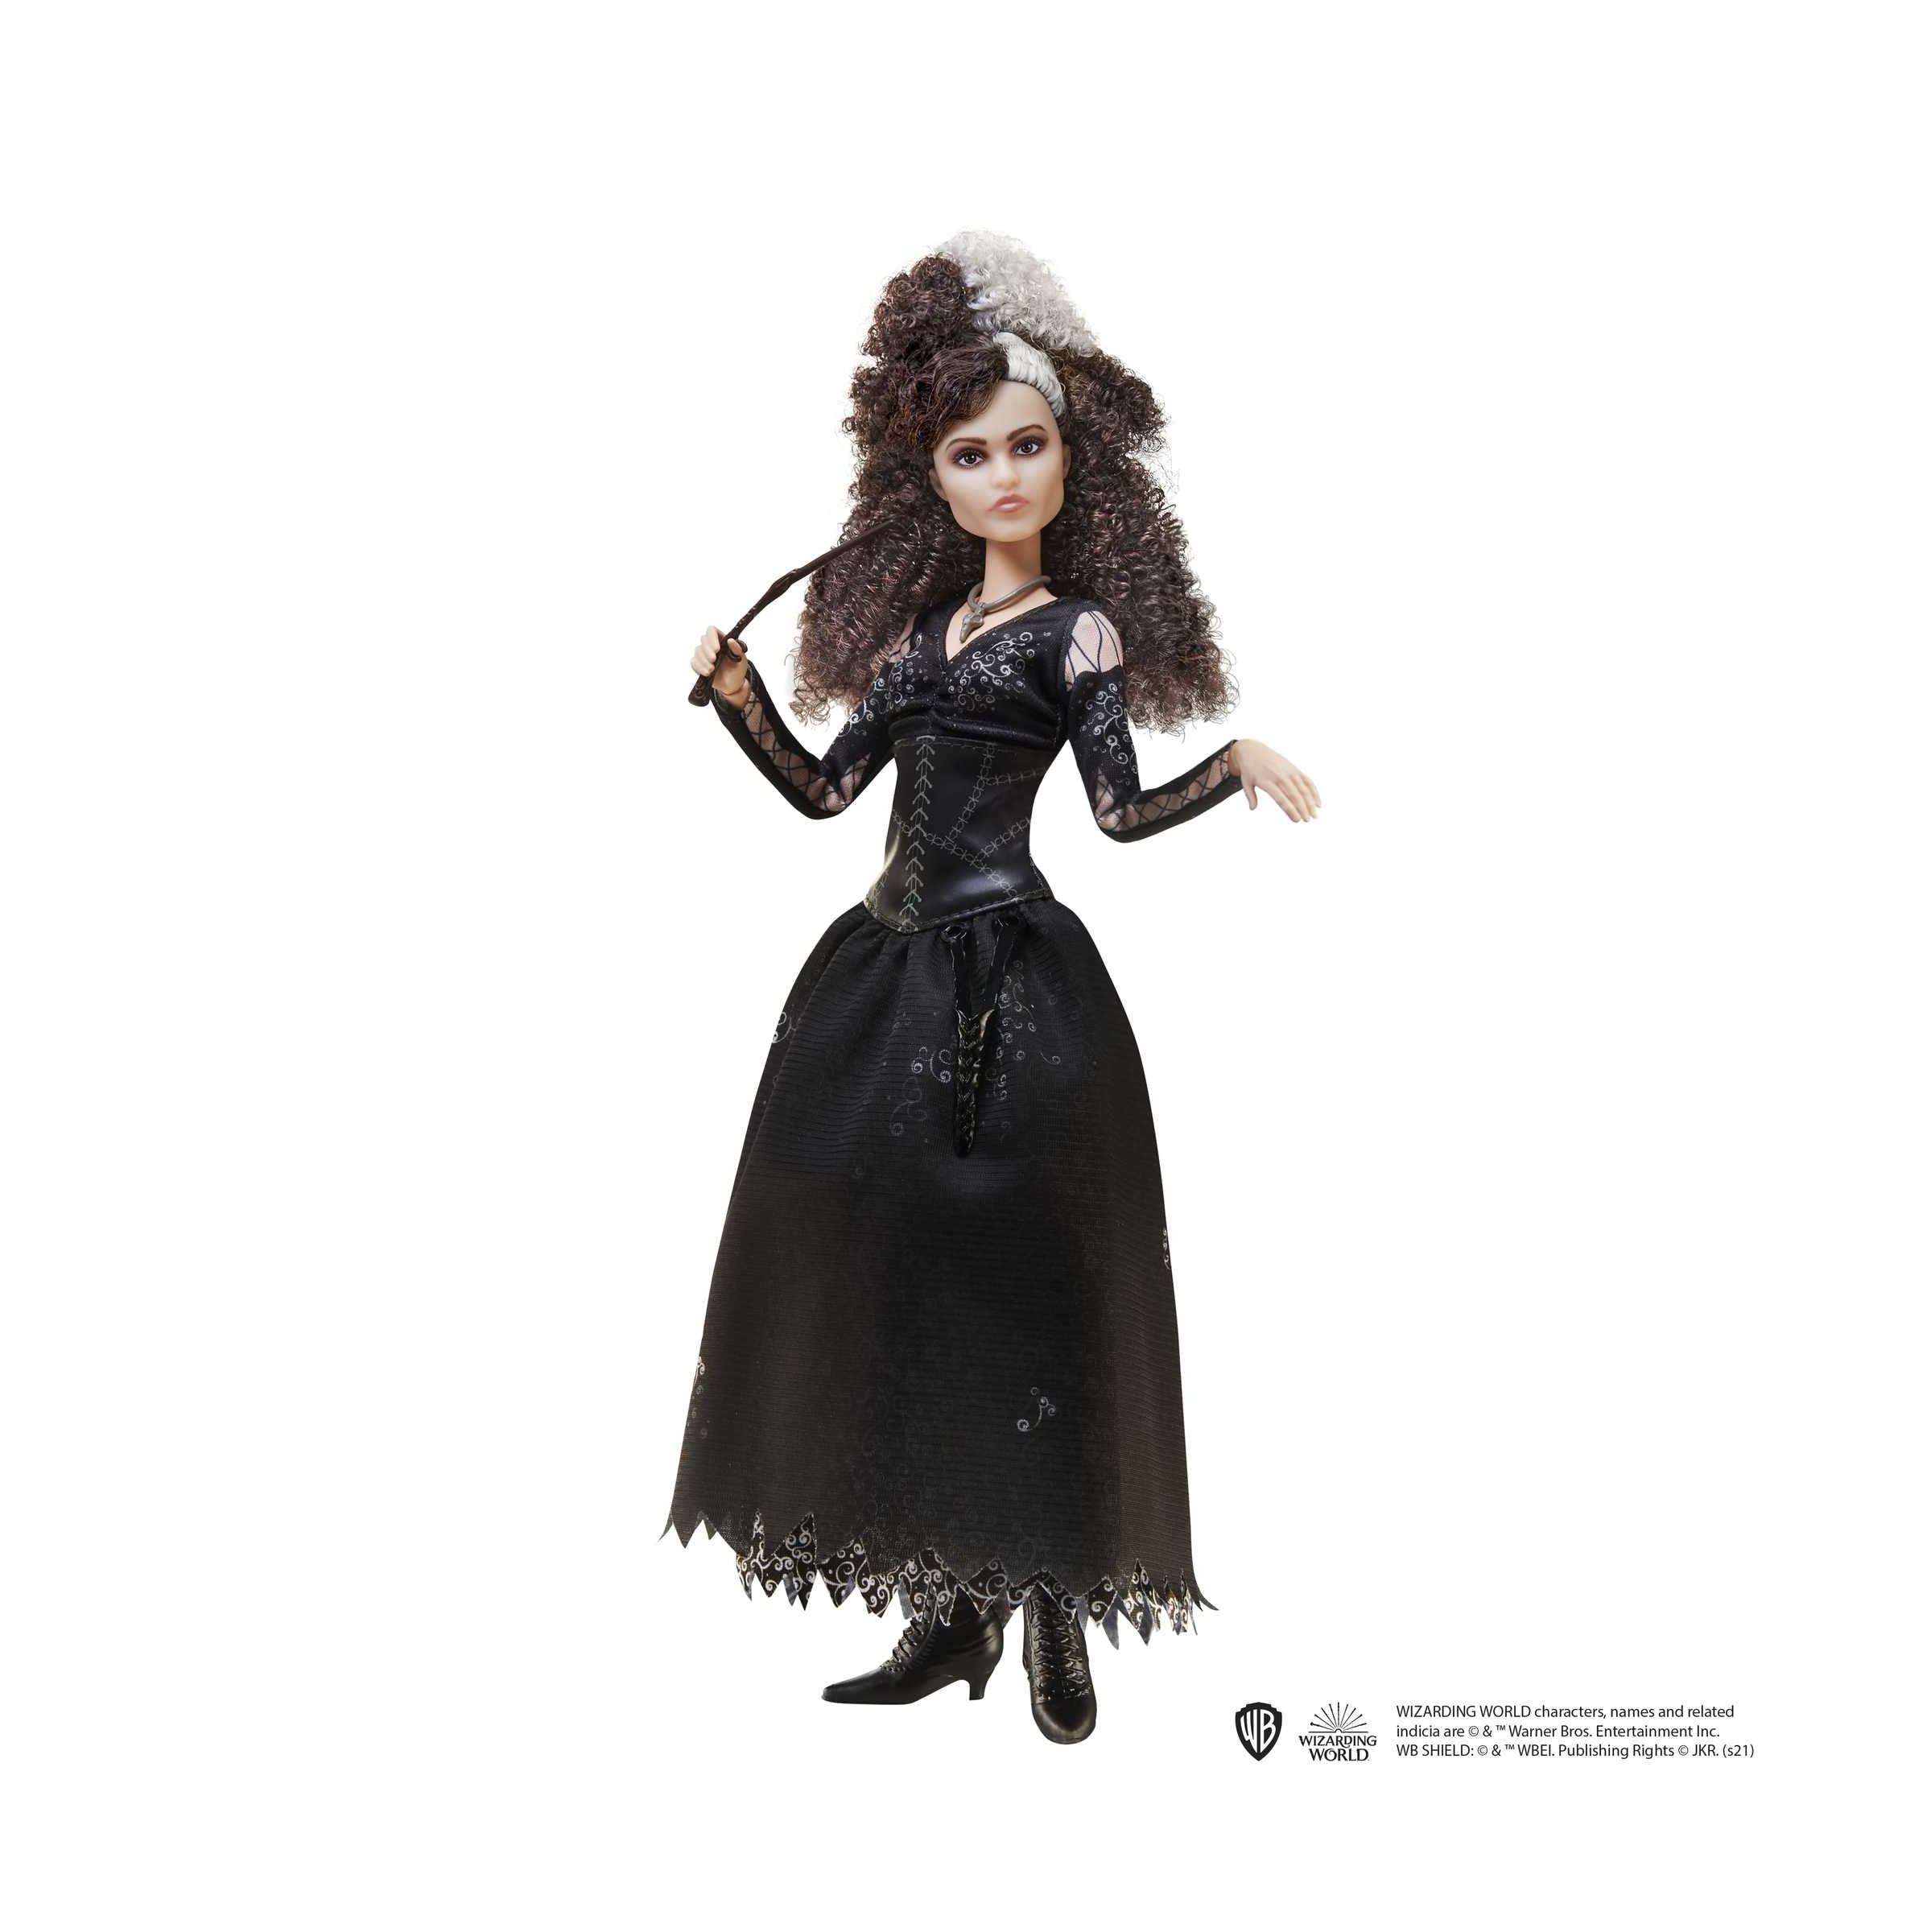 Harry potter - bellatrix lestrange bambola da collezione da 25 cm circa con capelli ricci, abito nero, collana e bacchetta, giocattolo per bambini 6+ anni, hfj70 - Harry Potter